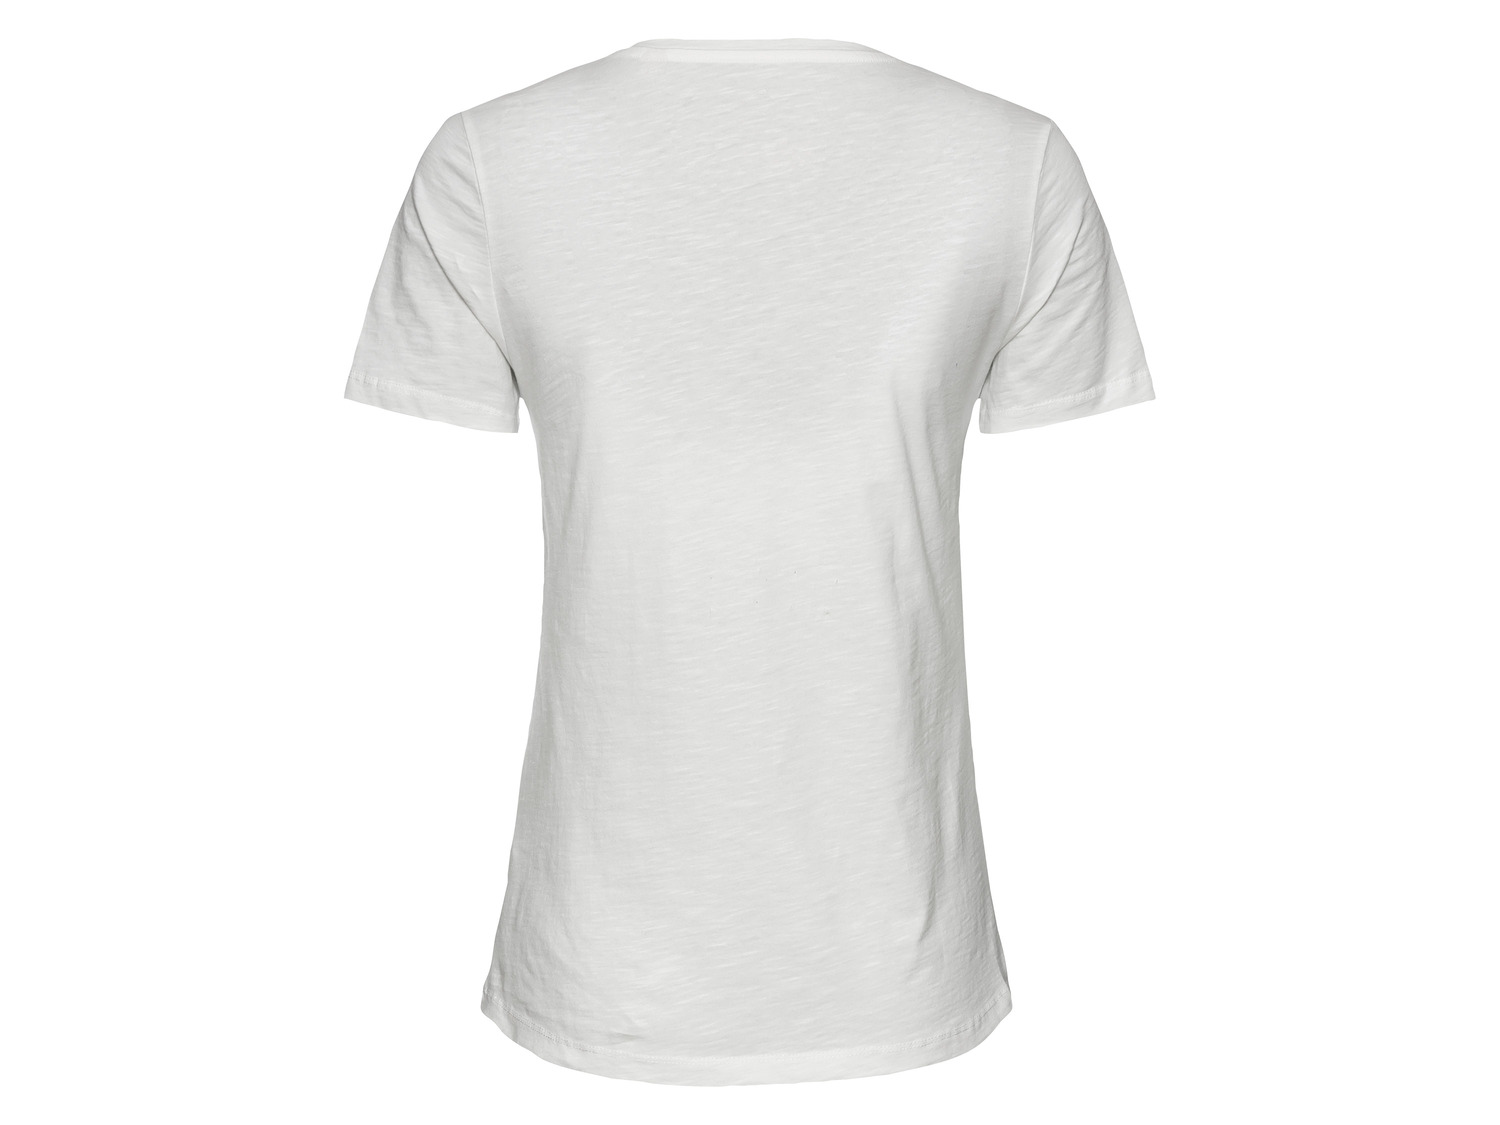 Soccx Damen T-Shirt aus reiner Baumwolle LIDL 